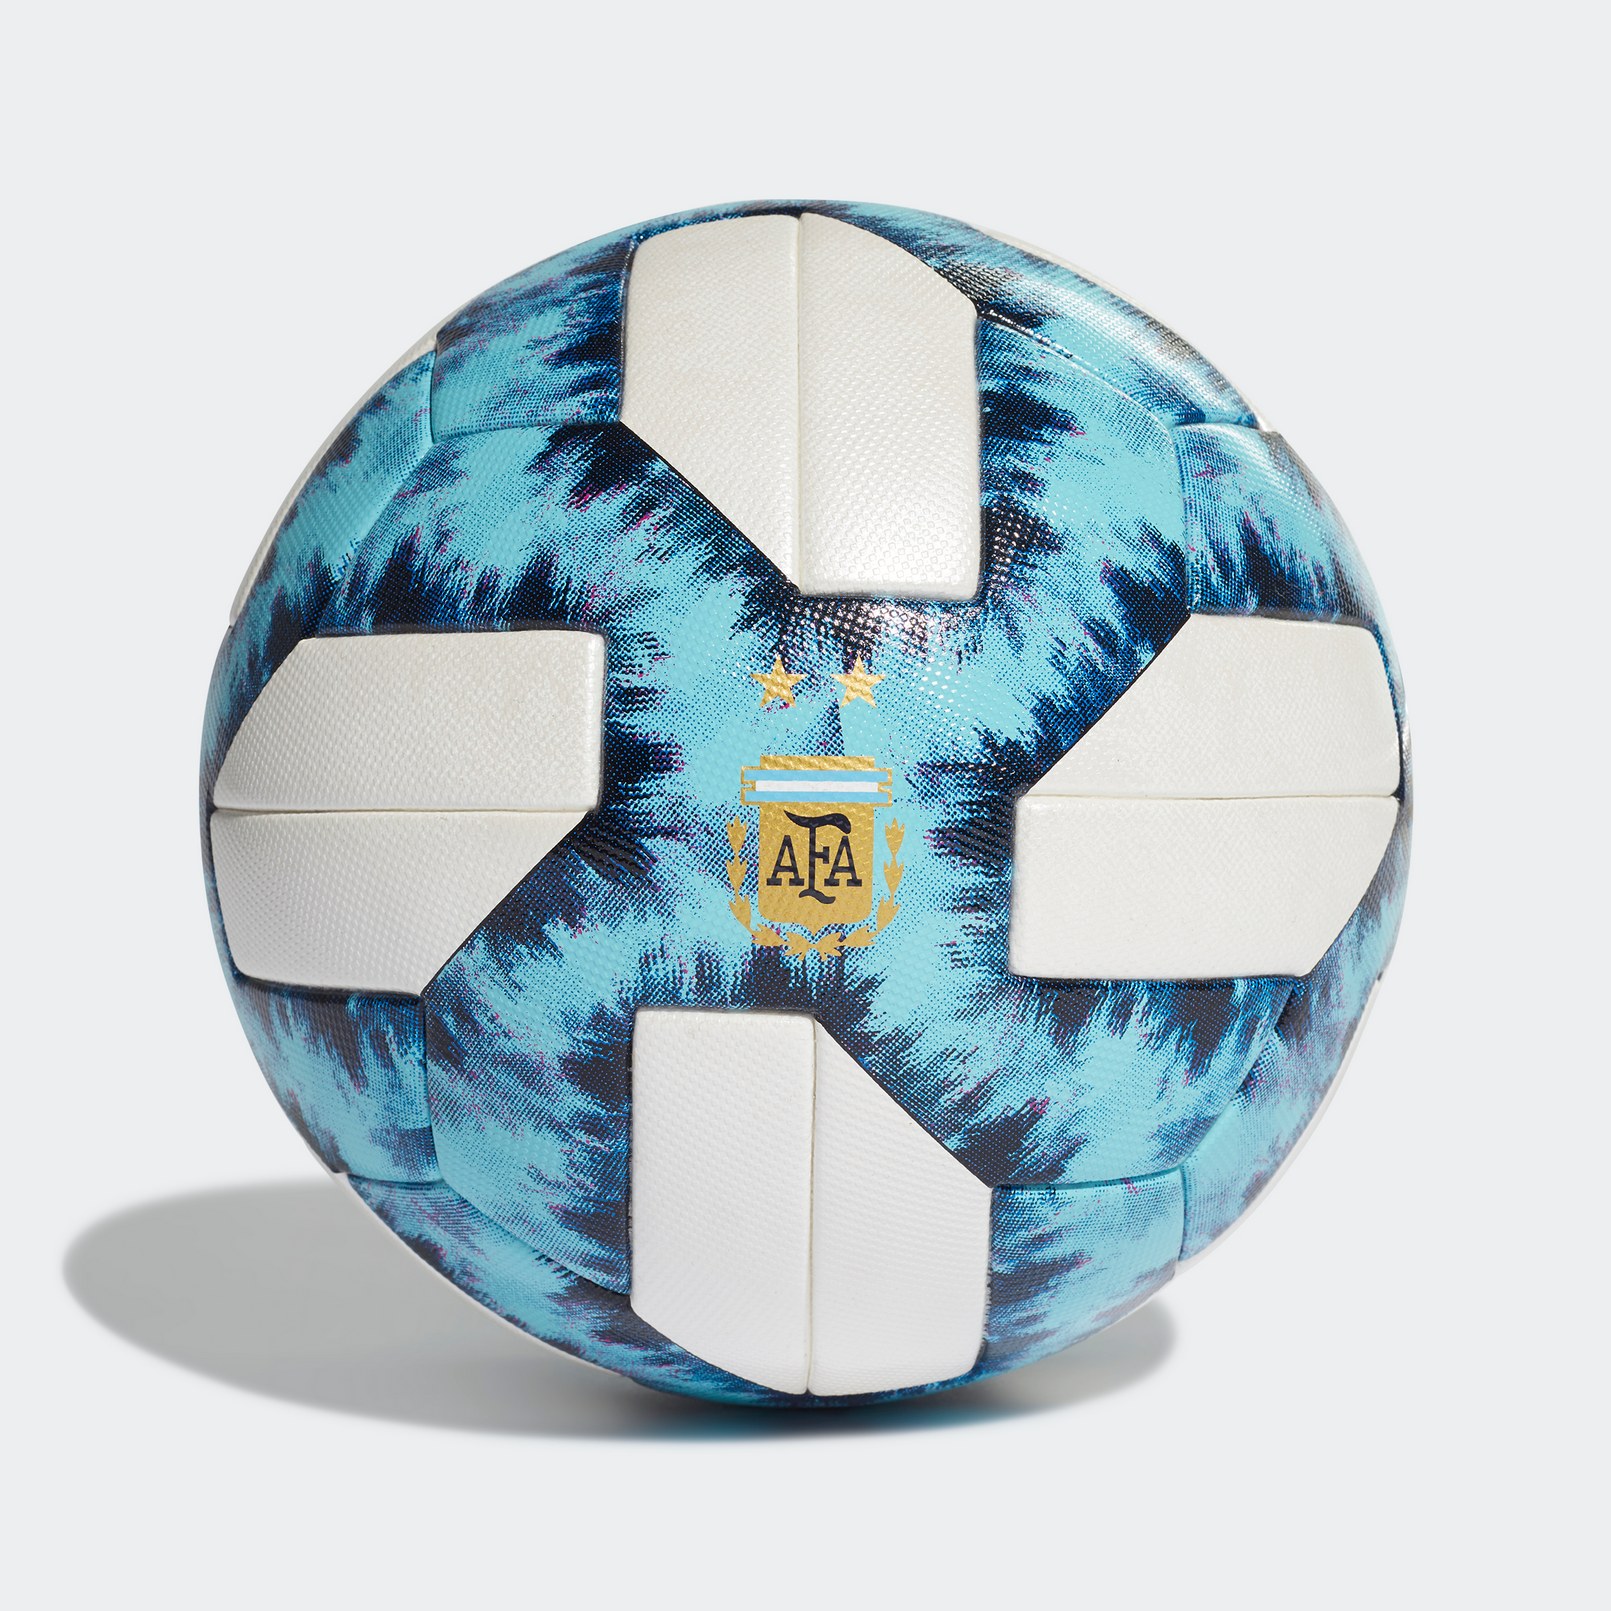 Balón para la Superliga Argentina 2019/20 | Imagen Adidas